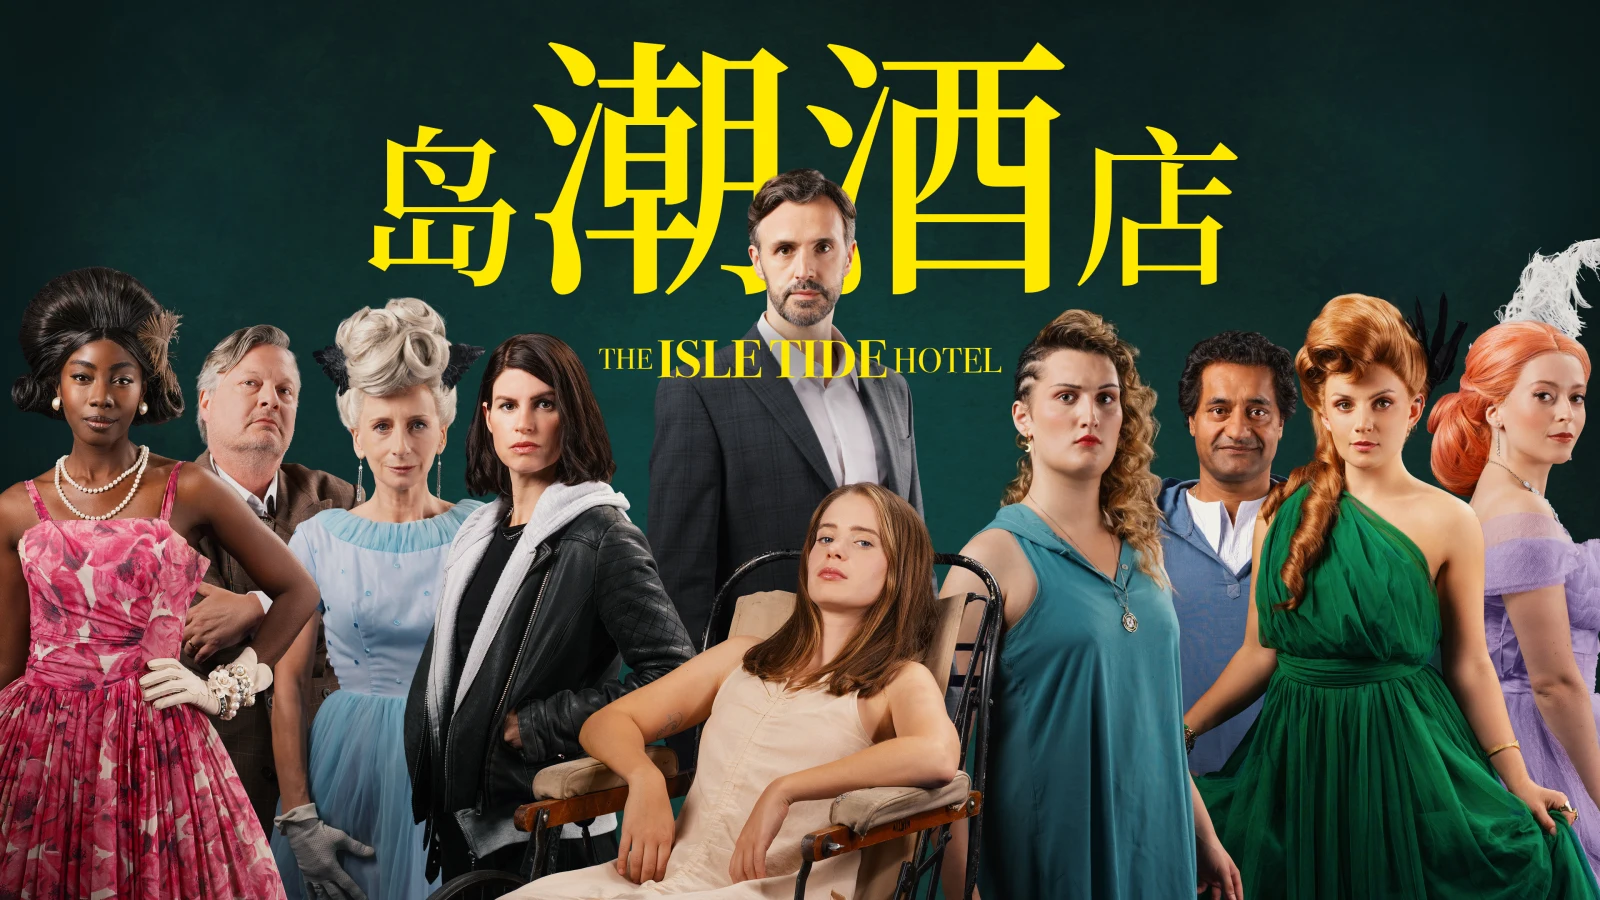 悬疑推理真人互动电影《岛潮酒店》将于9月12日推出，支持中文